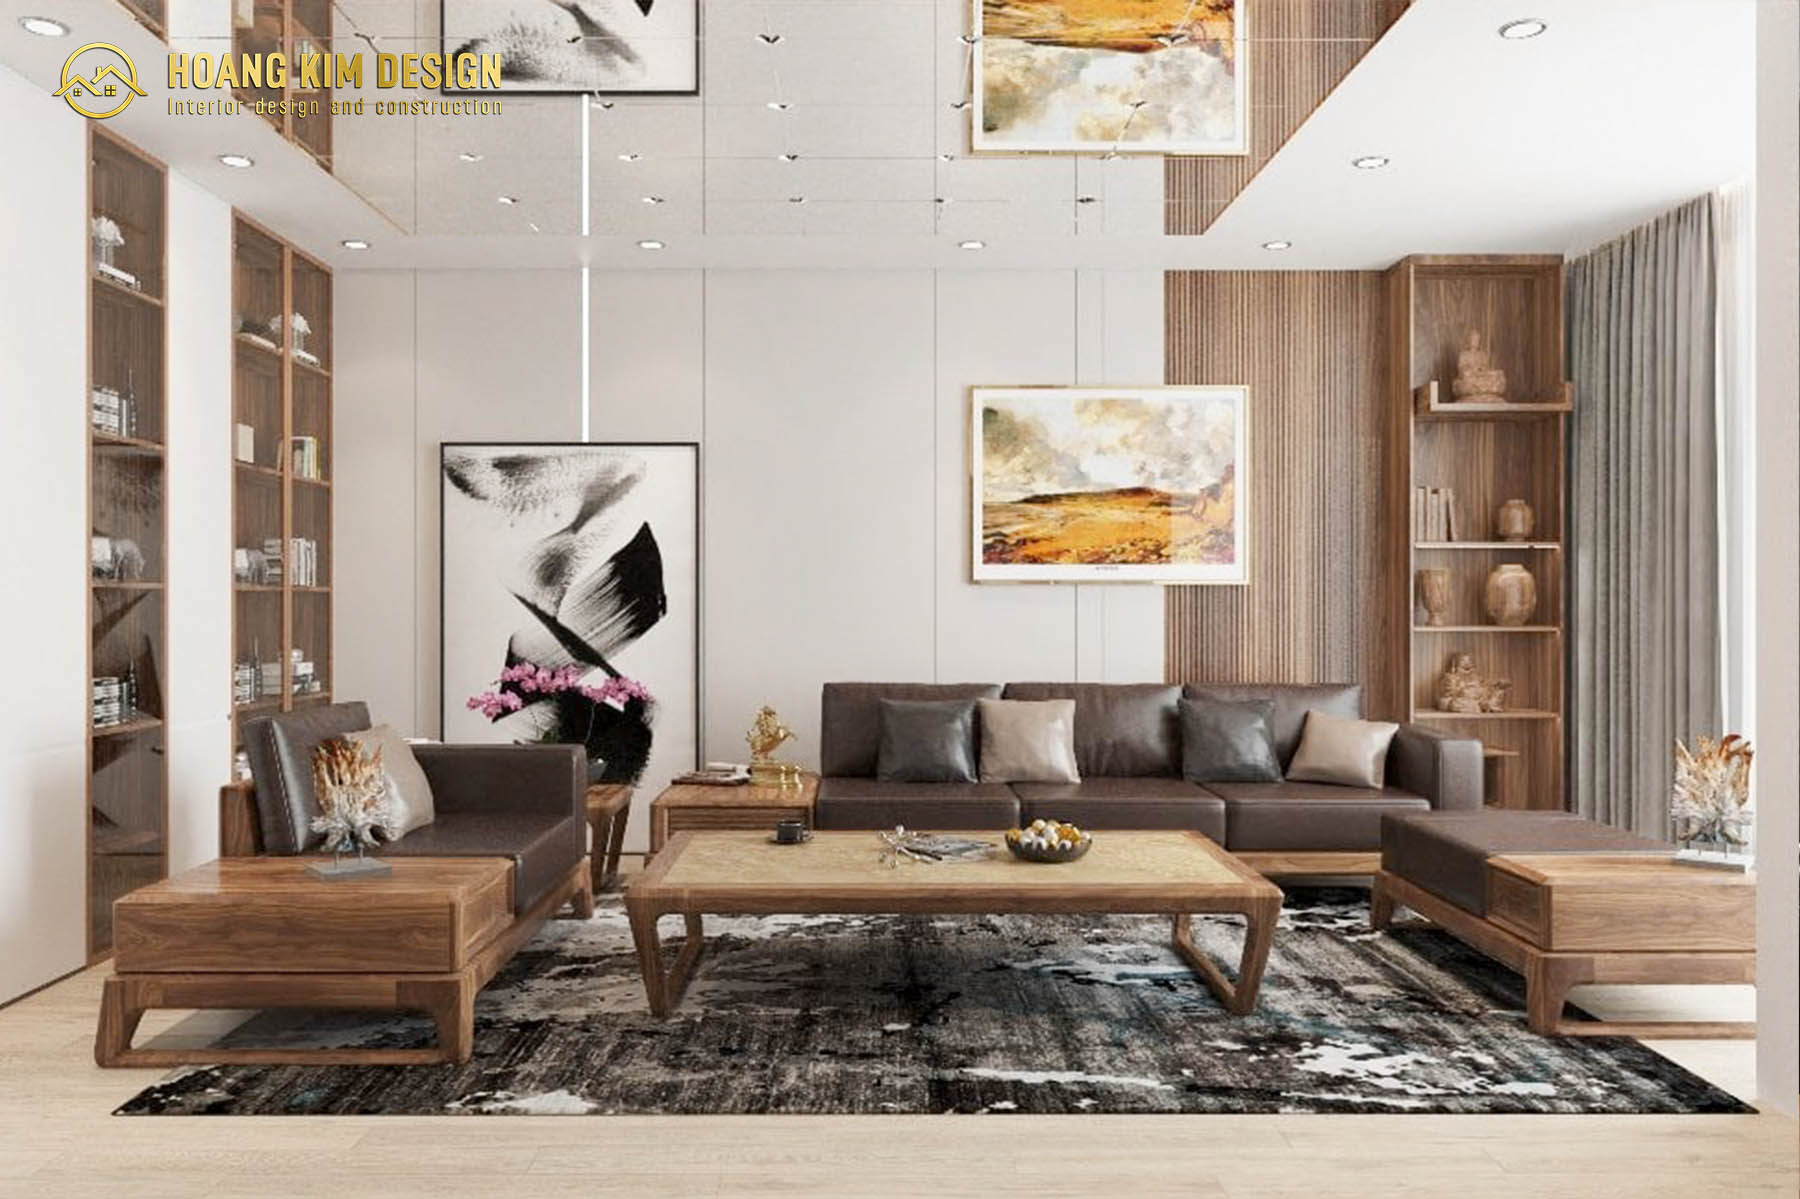 Thảm lót sàn giúp cho không gian phòng khách thu hút hơn